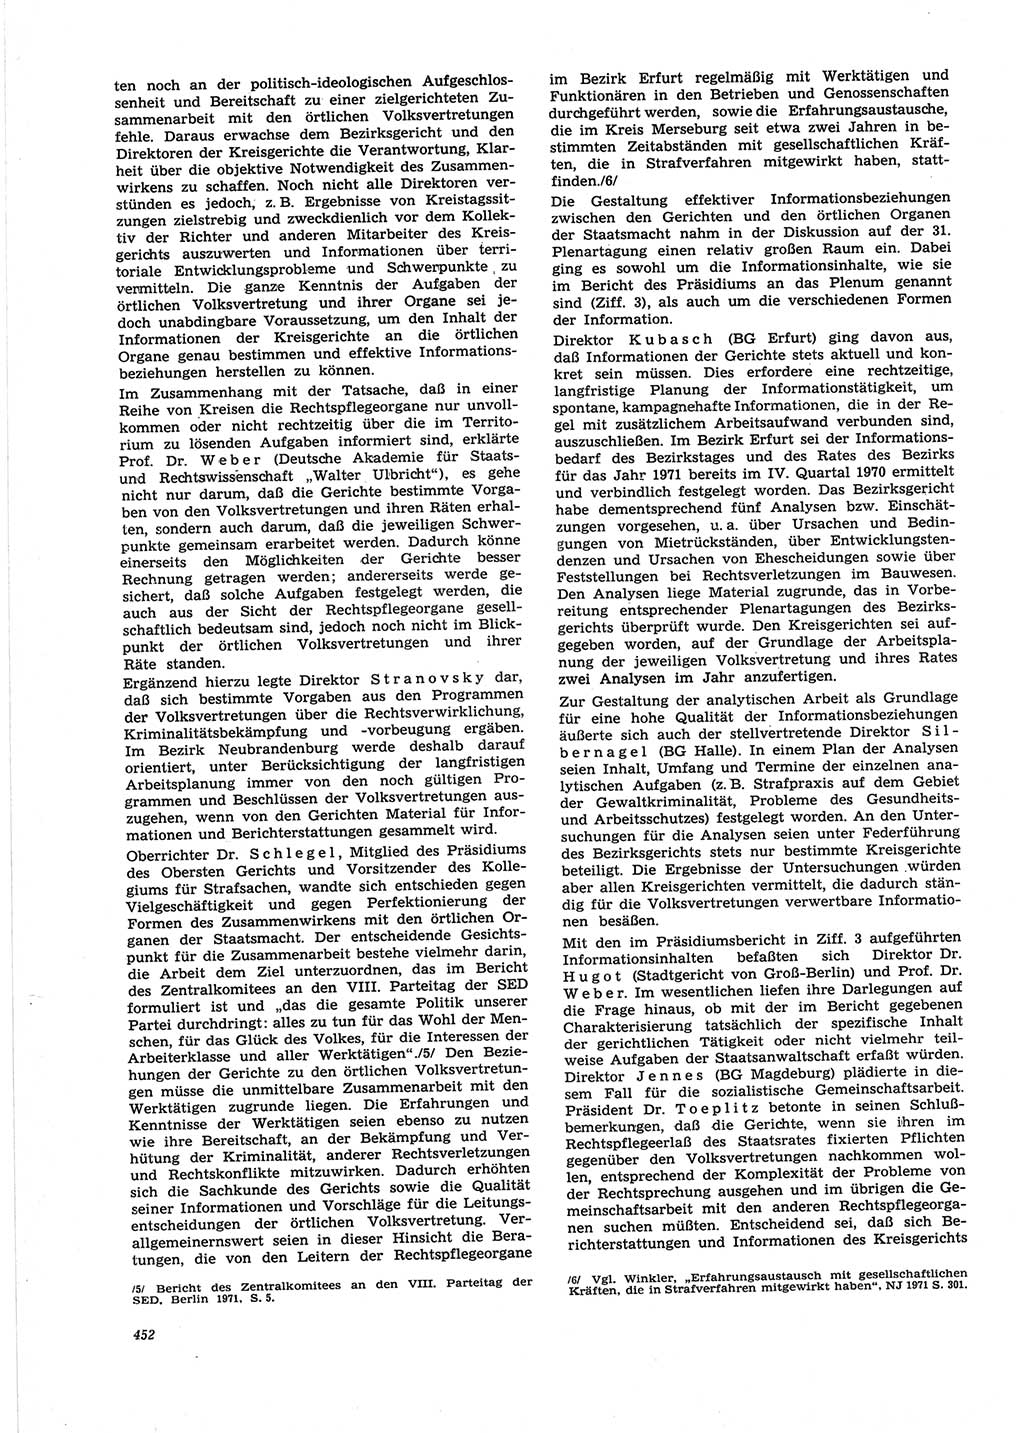 Neue Justiz (NJ), Zeitschrift für Recht und Rechtswissenschaft [Deutsche Demokratische Republik (DDR)], 25. Jahrgang 1971, Seite 452 (NJ DDR 1971, S. 452)